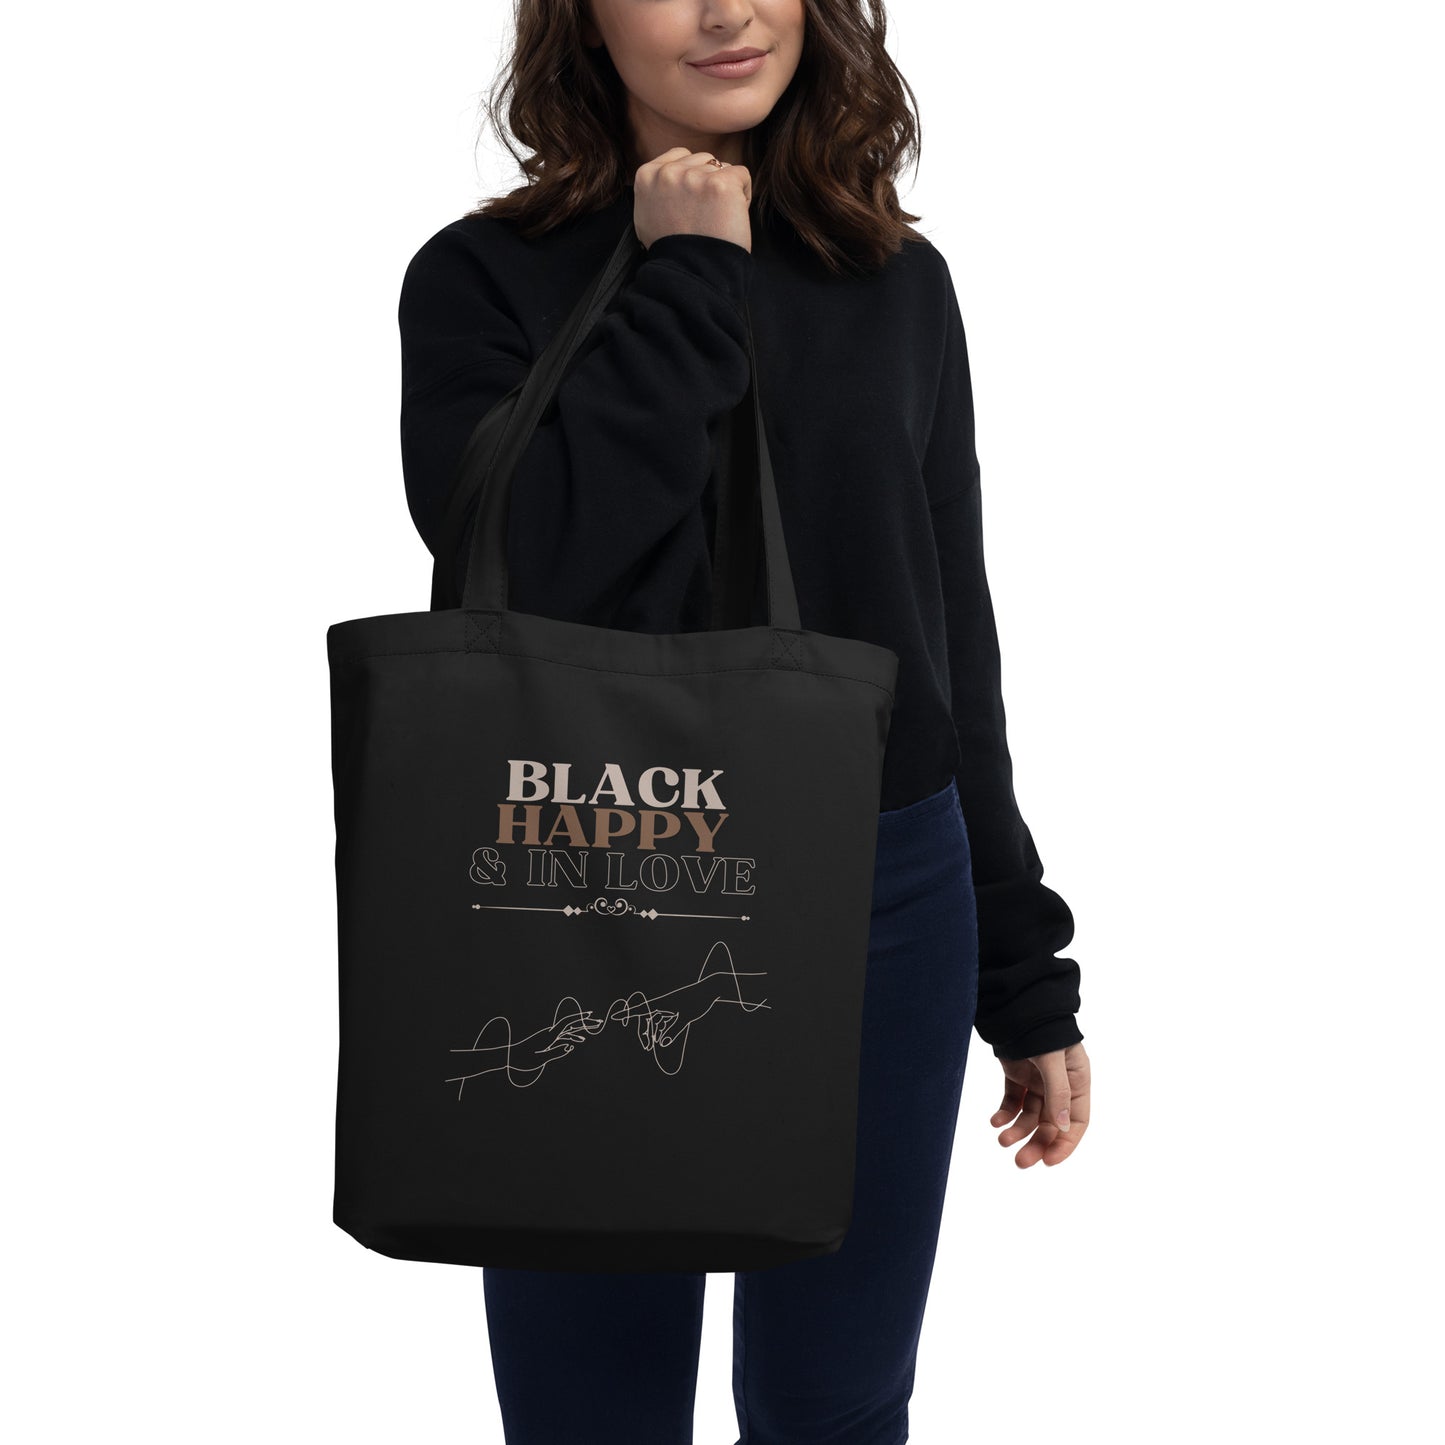 Black, Happy, & In Love Eco Tote Bag